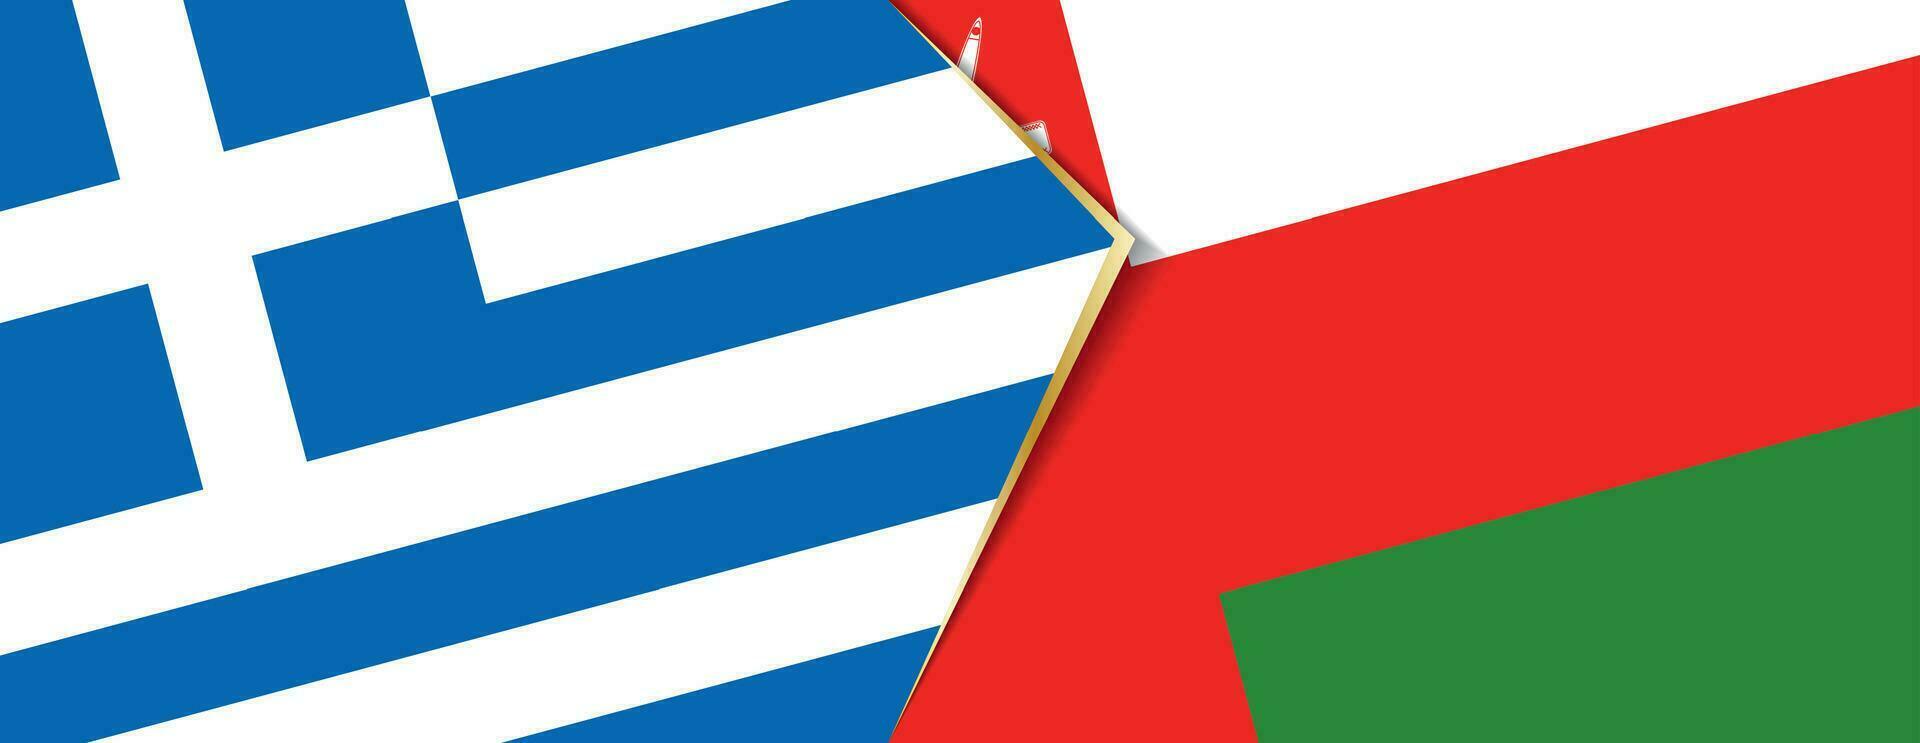 grekland och oman flaggor, två vektor flaggor.